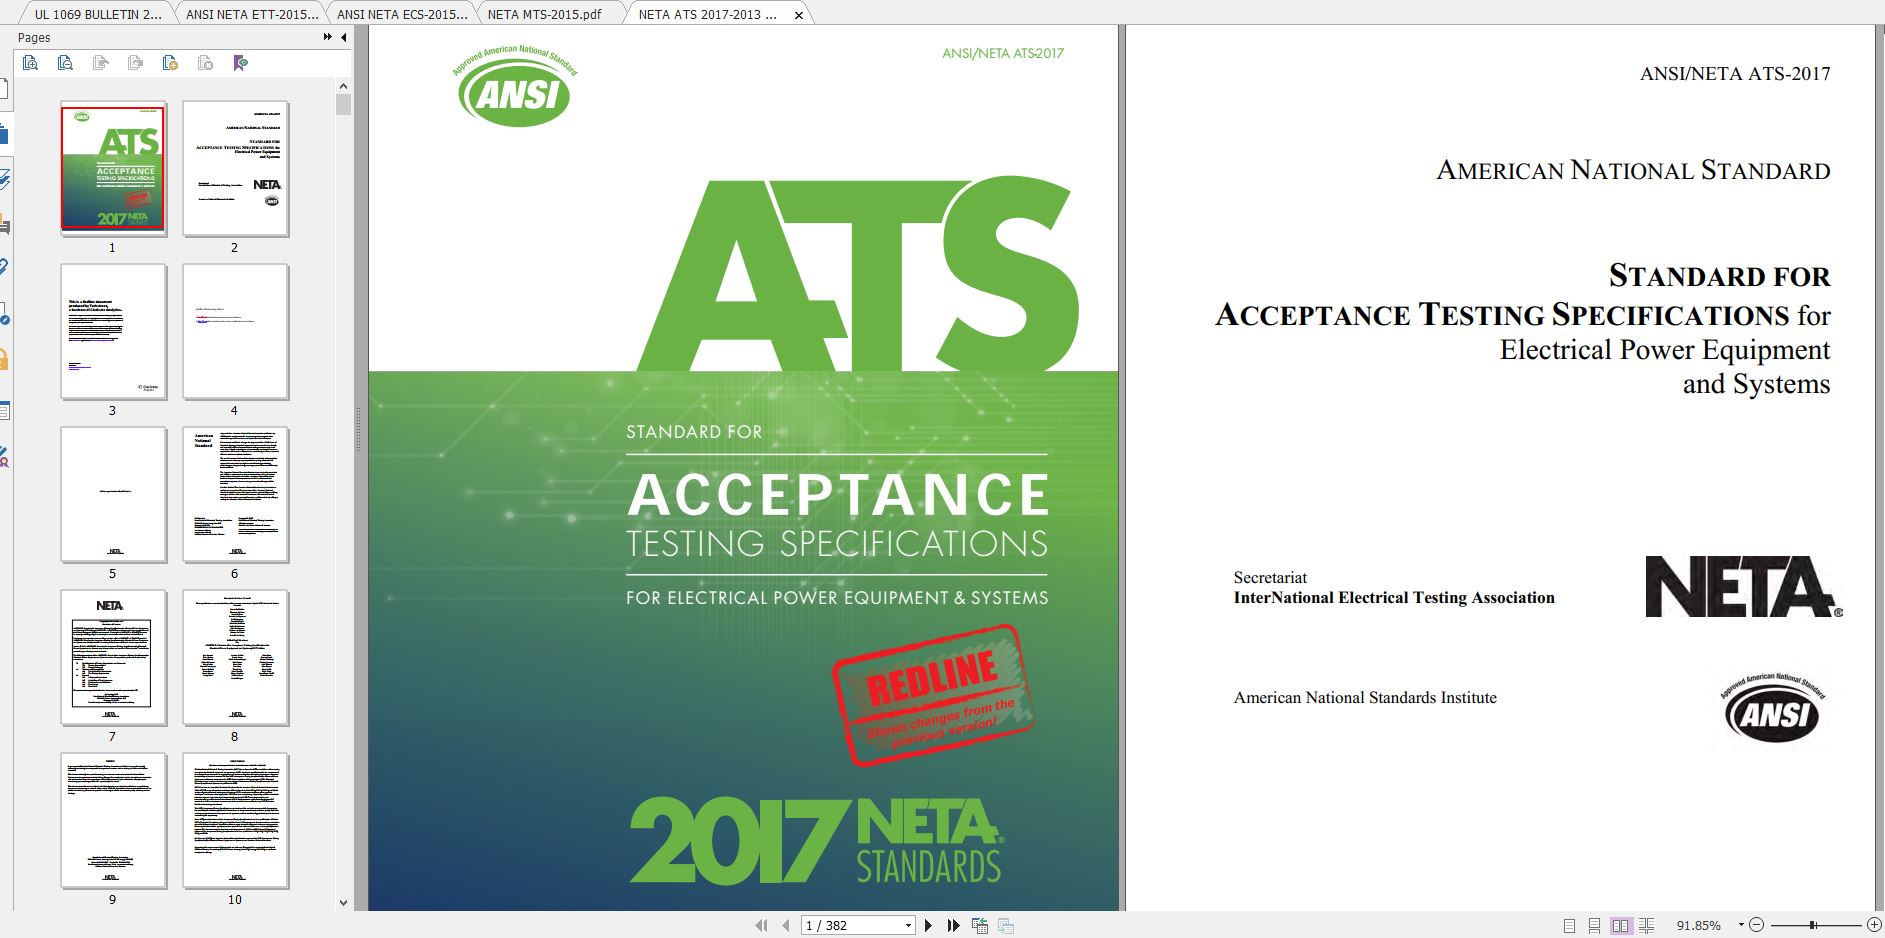 دانلود استاندارد ANSI NETA ATS 2017 خرید استاندارد STANDARD FOR ACCEPTANCE TESTING SPECIFICATIONS for Electrical Power Equipment and Systems Download ANSI/NETA ATS-2017 گیگاپیپر